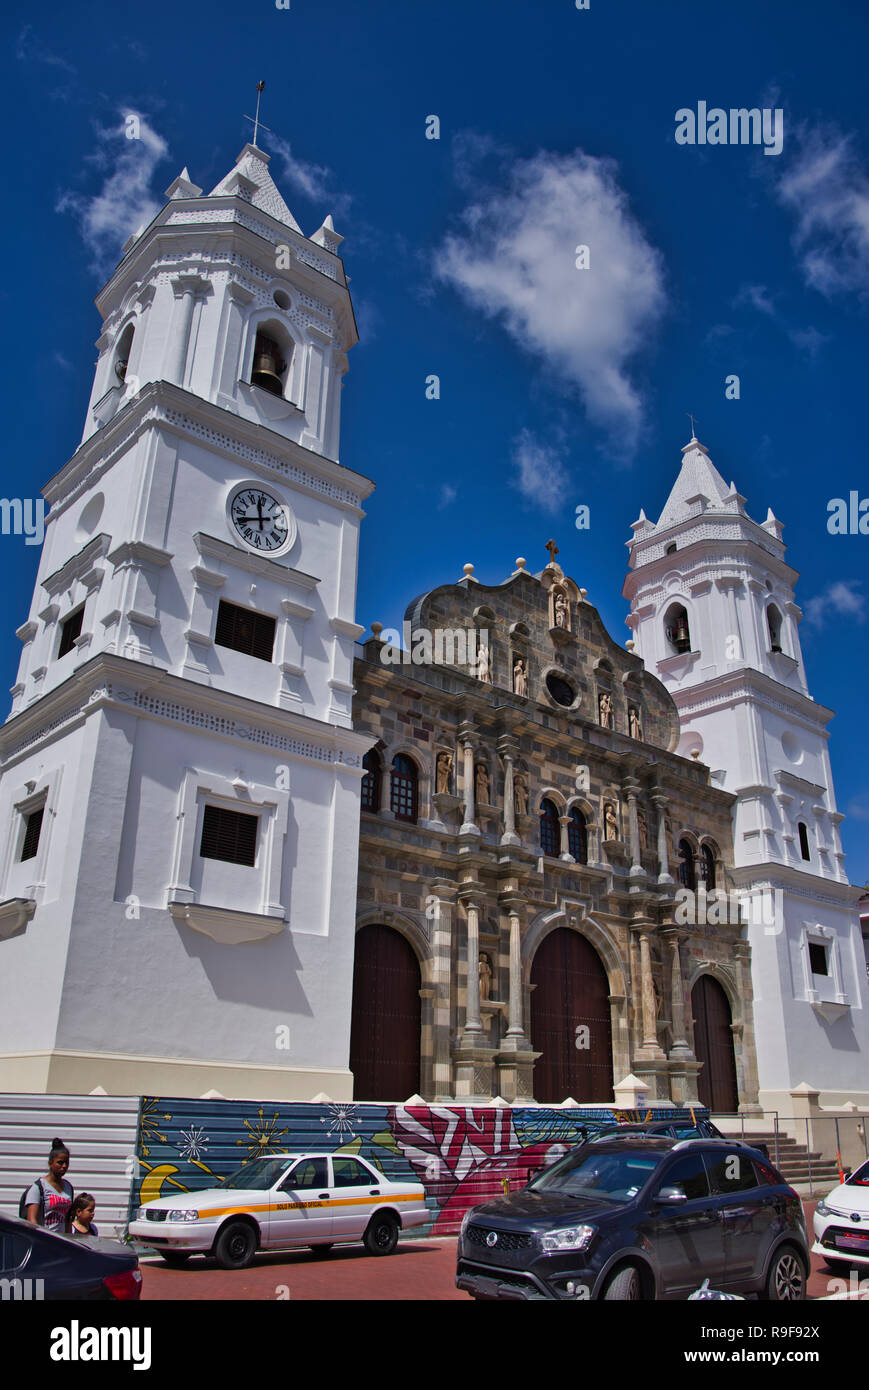 La cathédrale de la ville de Panama rénové Banque D'Images